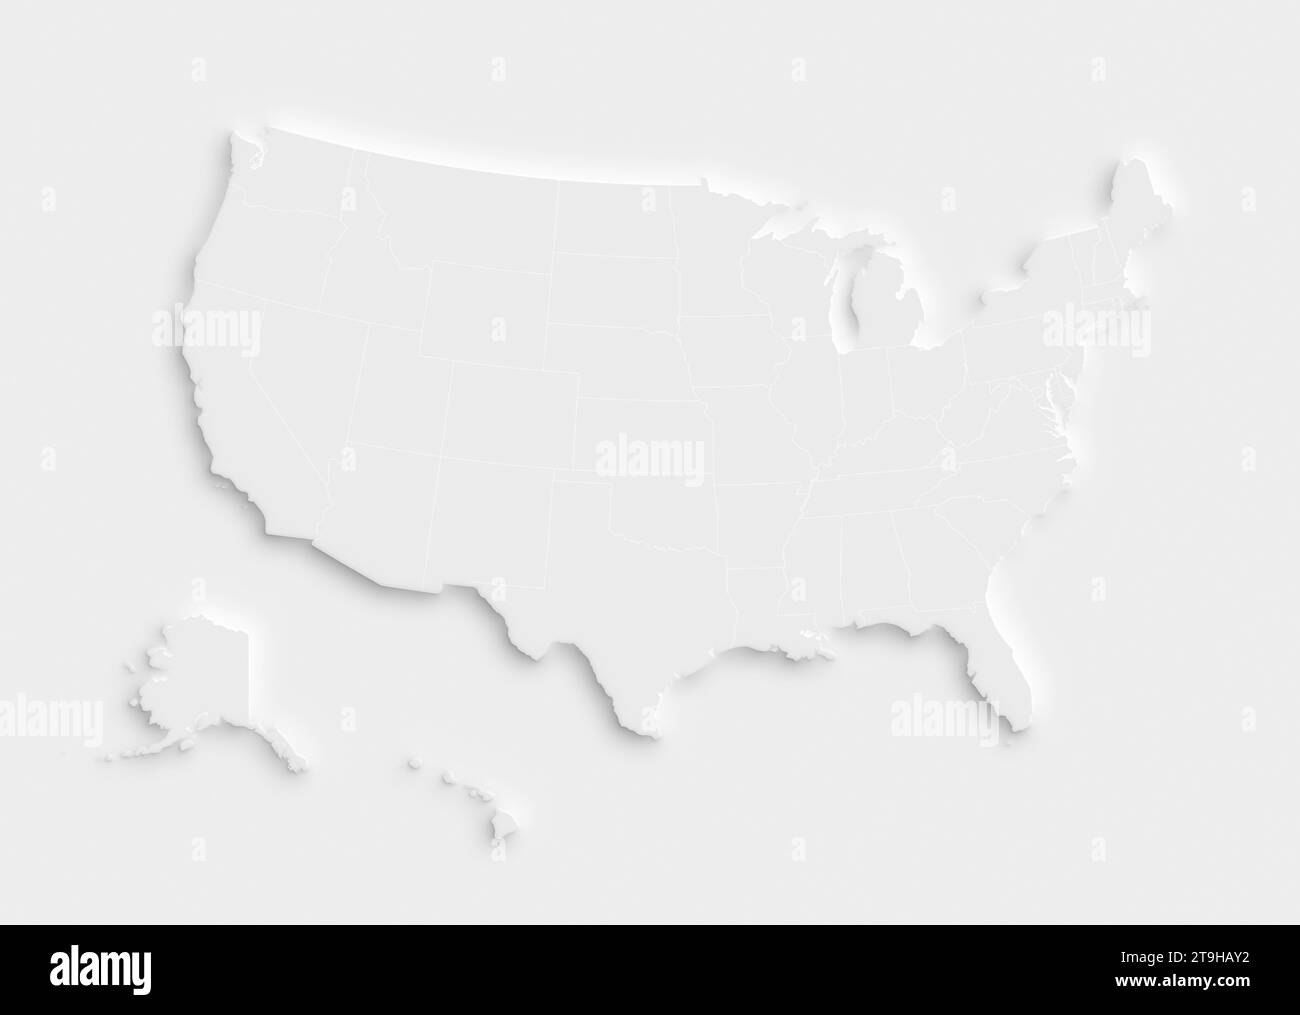 Mapa blanco de los Estados Unidos de América (EE.UU., América) sobre fondo blanco con sombra o efecto 3d. Mapa moderno y limpio de alta resolución con estados. Foto de stock